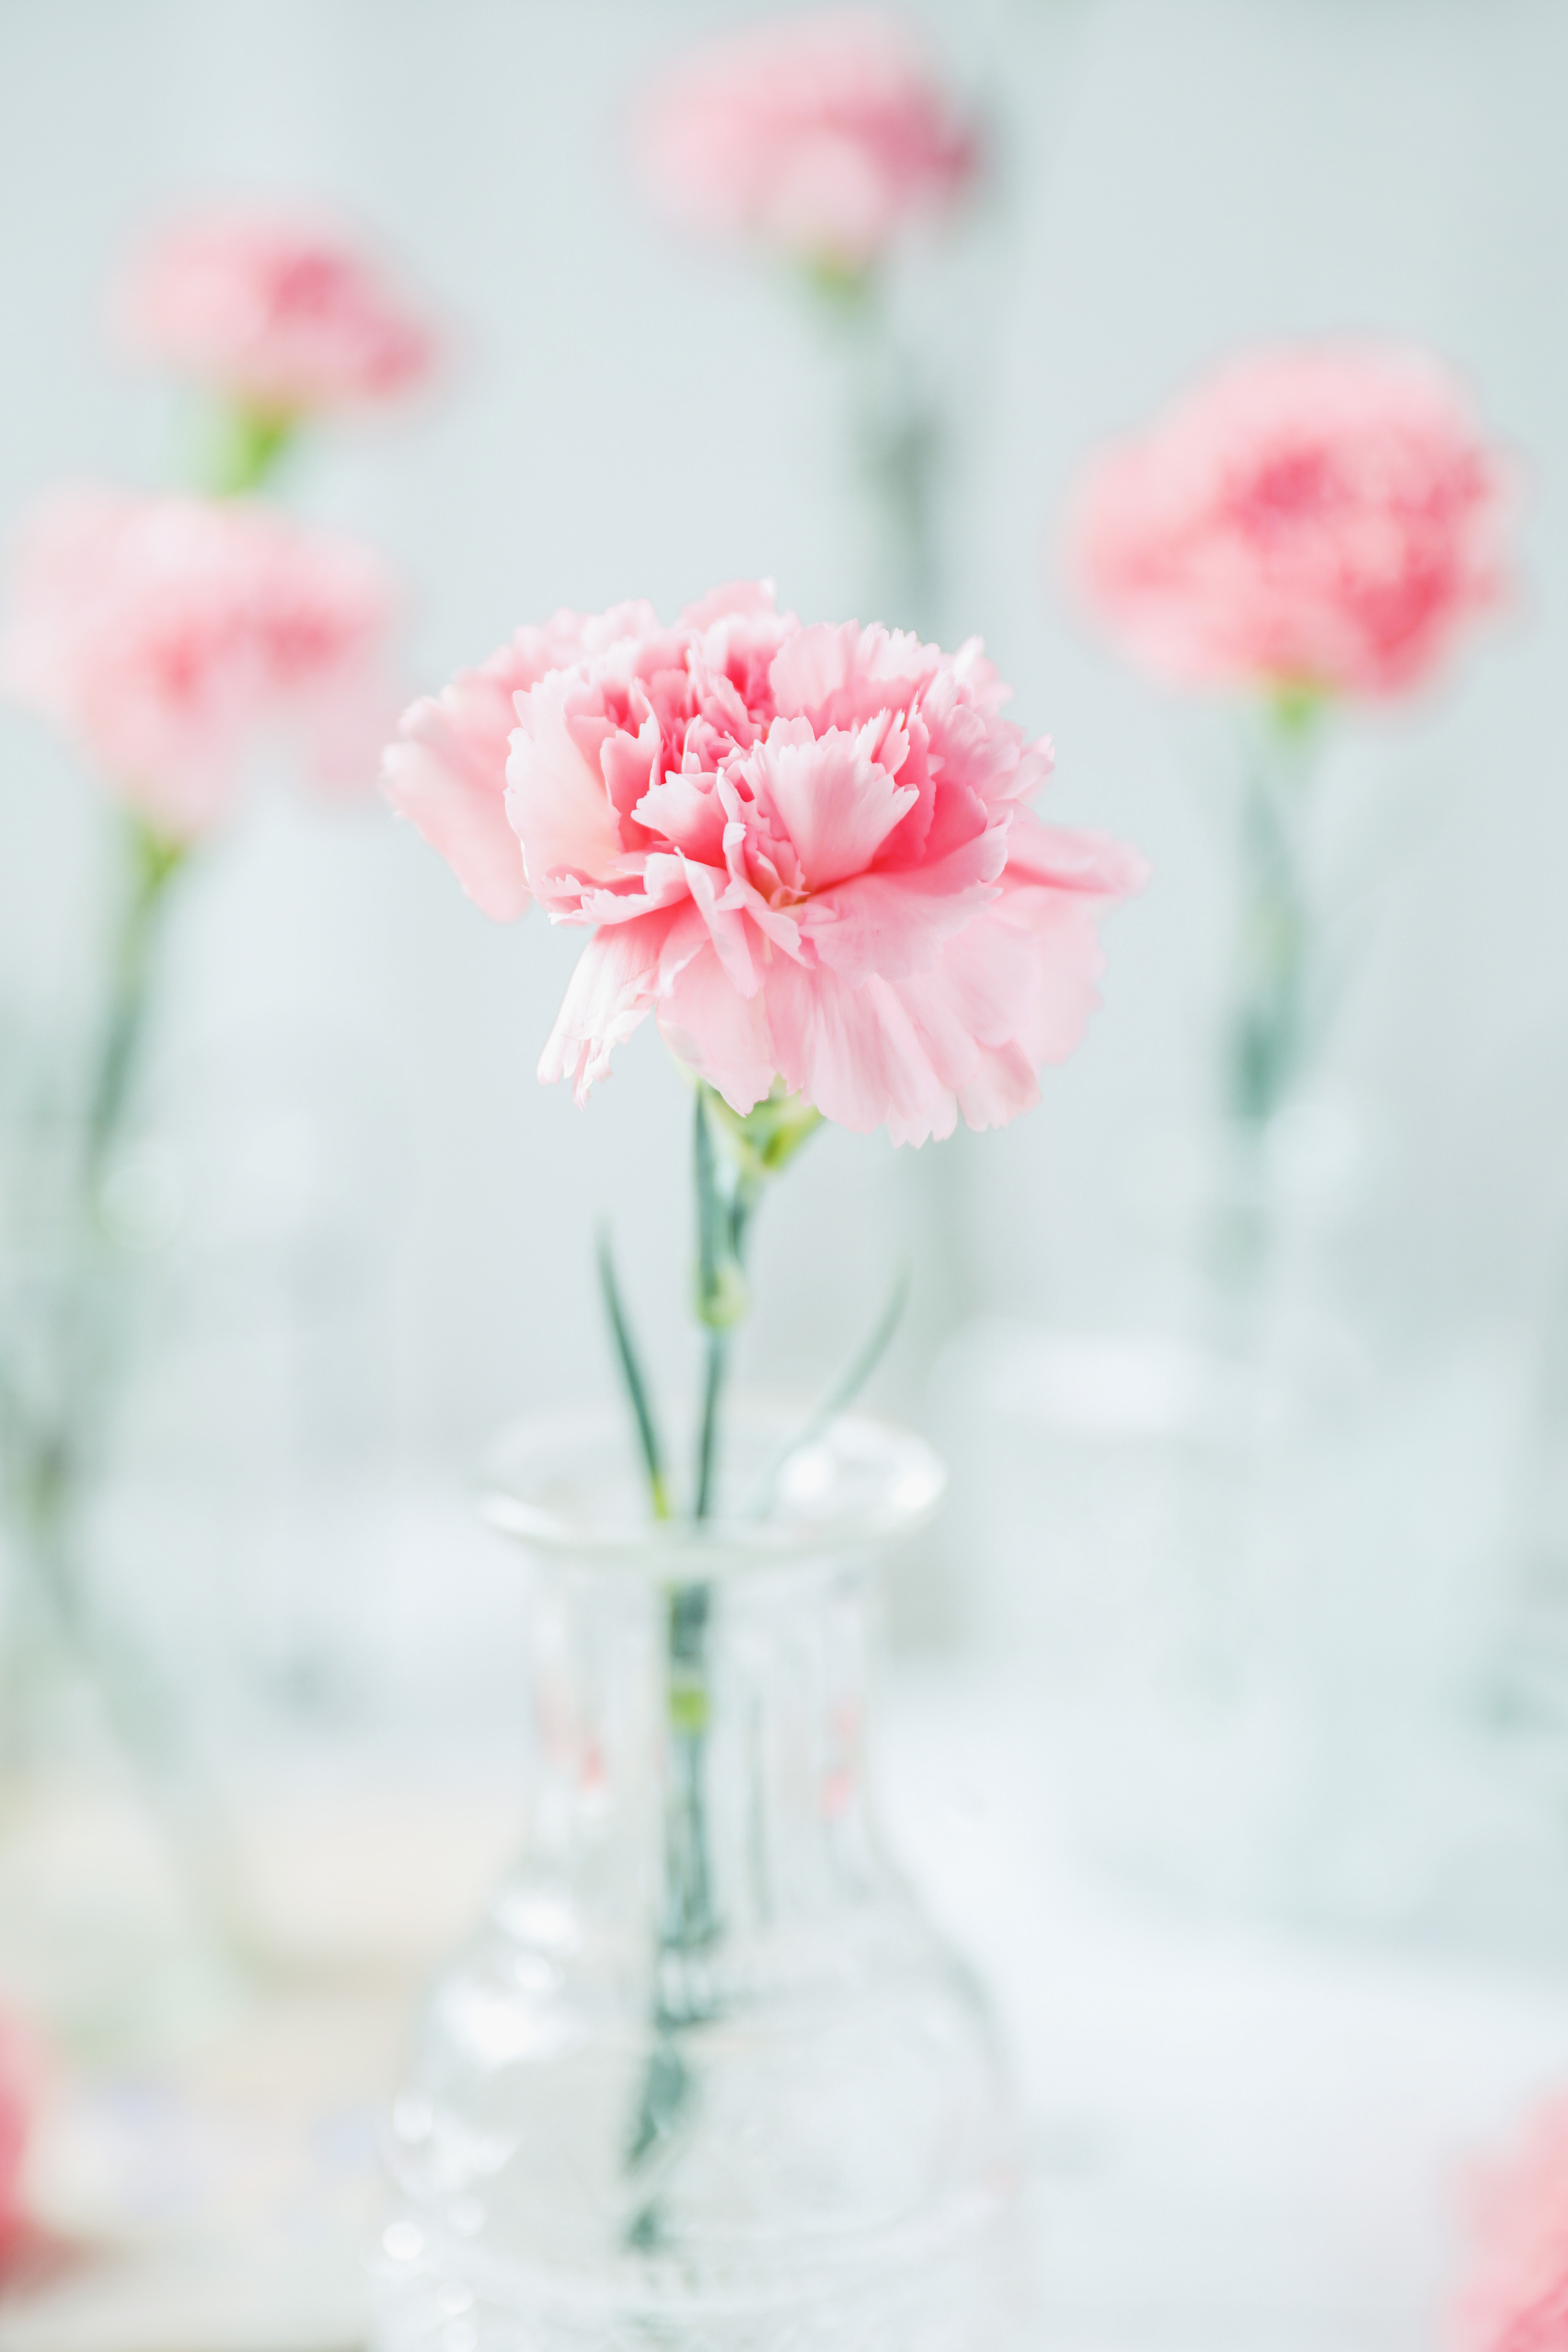 壁纸 新鲜的粉红玫瑰花 2560x1600 HD 高清壁纸, 图片, 照片